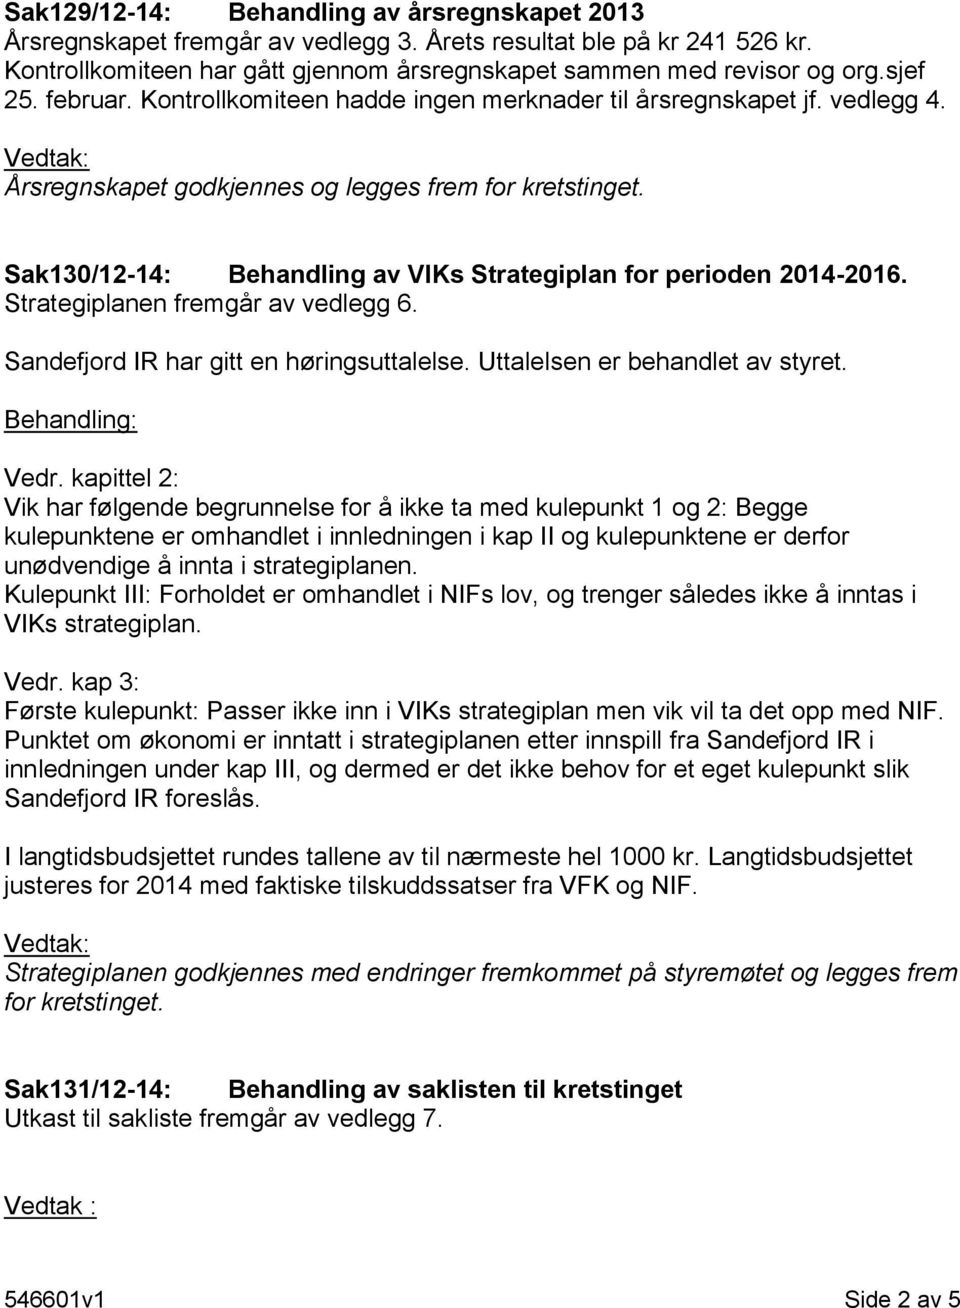 Sak130/12-14: Behandling av VIKs Strategiplan for perioden 2014-2016. Strategiplanen fremgår av vedlegg 6. Sandefjord IR har gitt en høringsuttalelse. Uttalelsen er behandlet av styret.